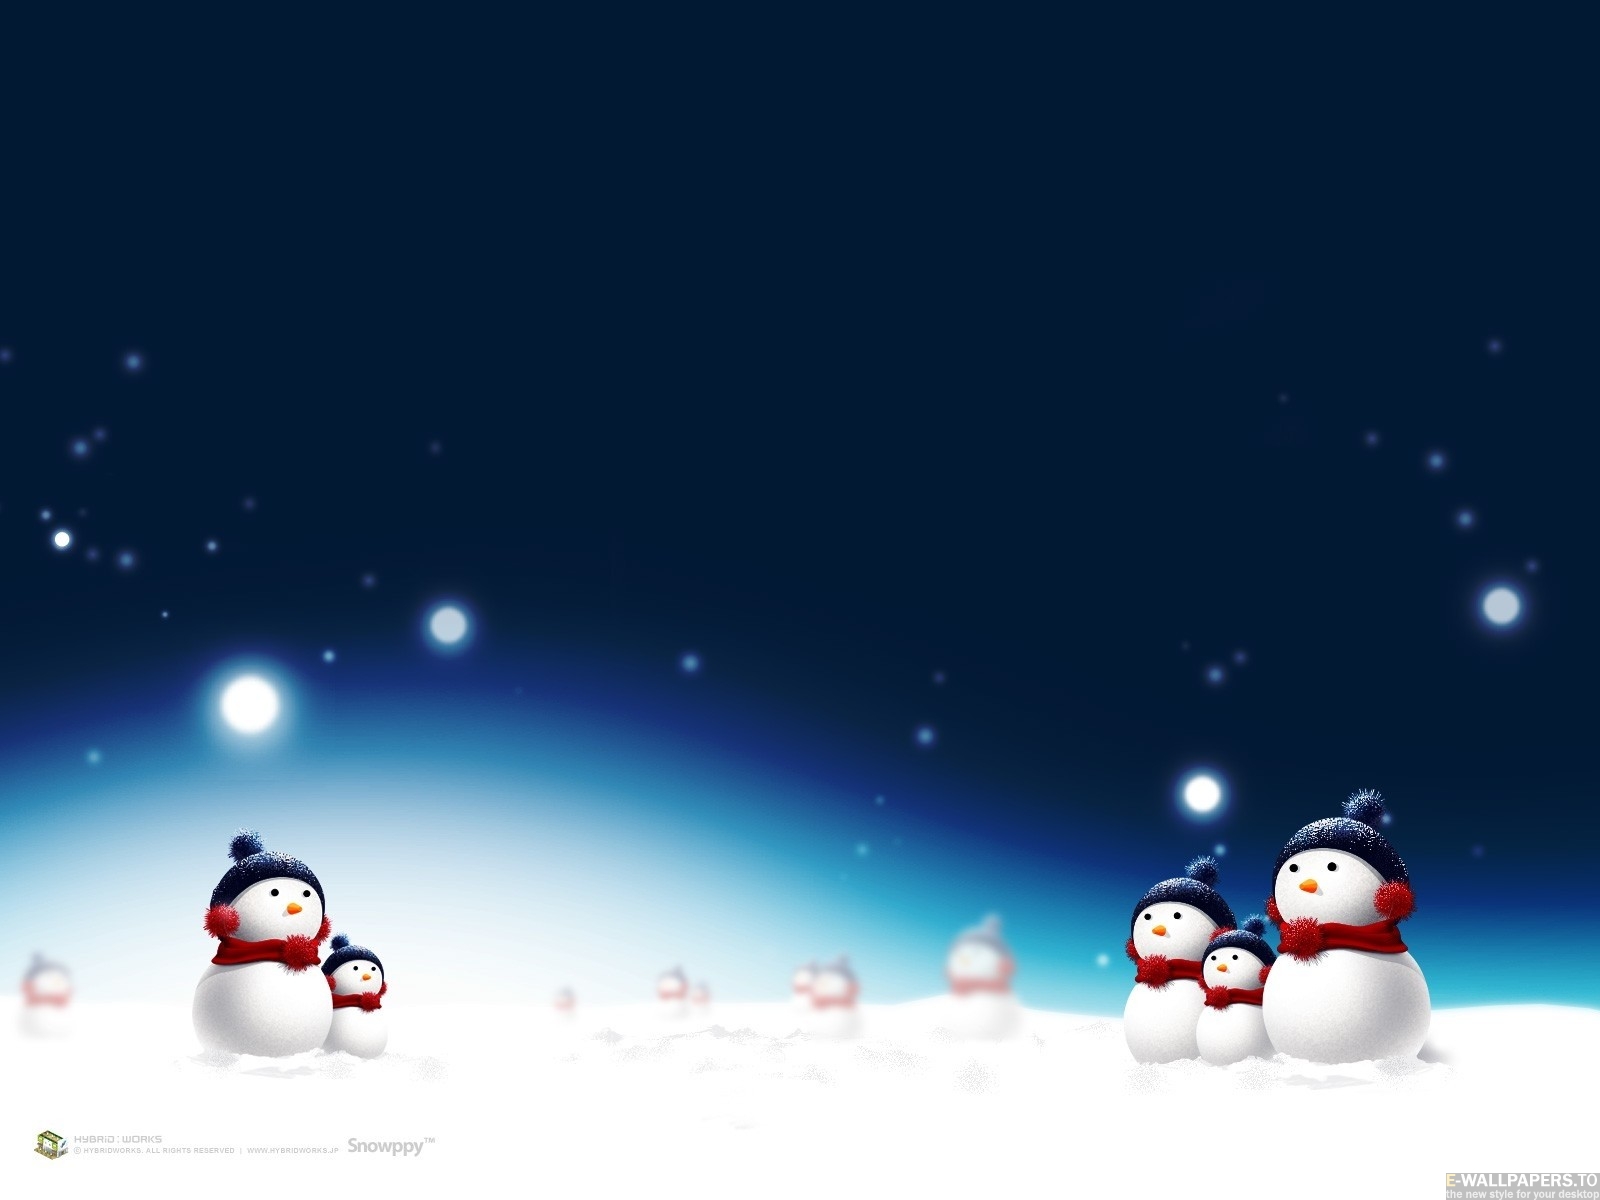 tapete weihnachten,schneemann,licht,winter,himmel,schnee